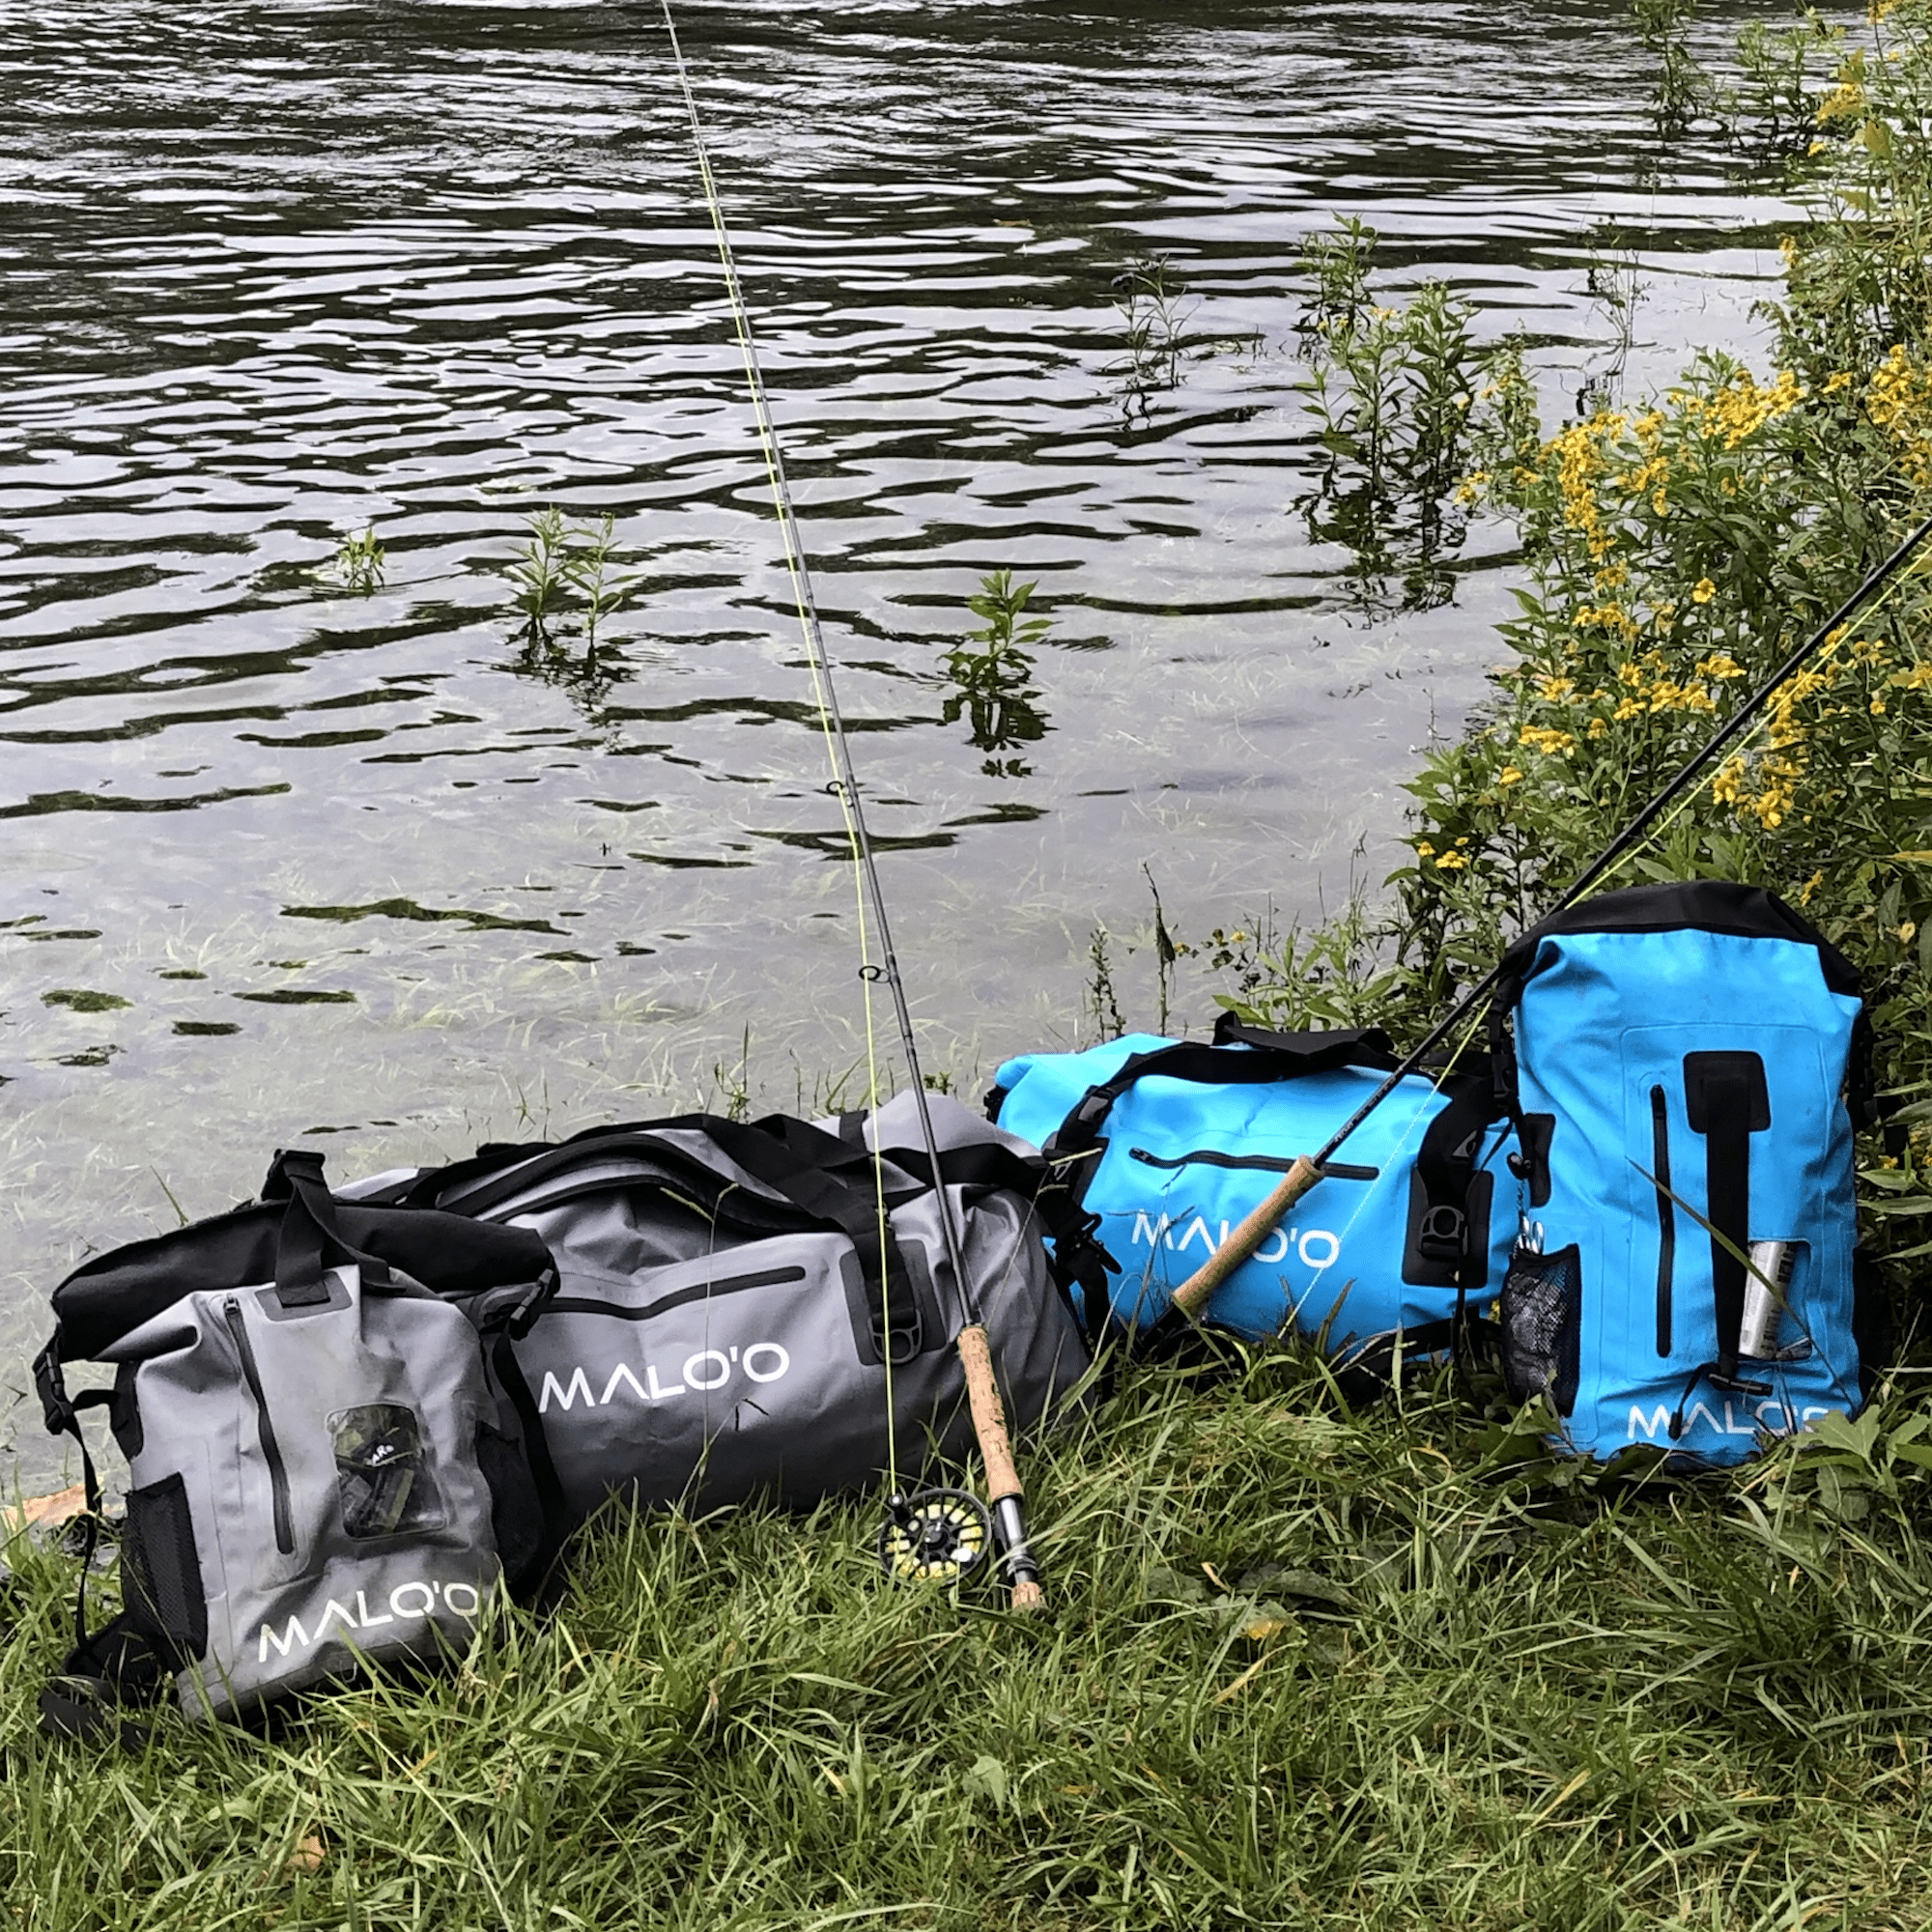 MIER Large Waterproof Duffel Bag Roll-top Dry Backpack